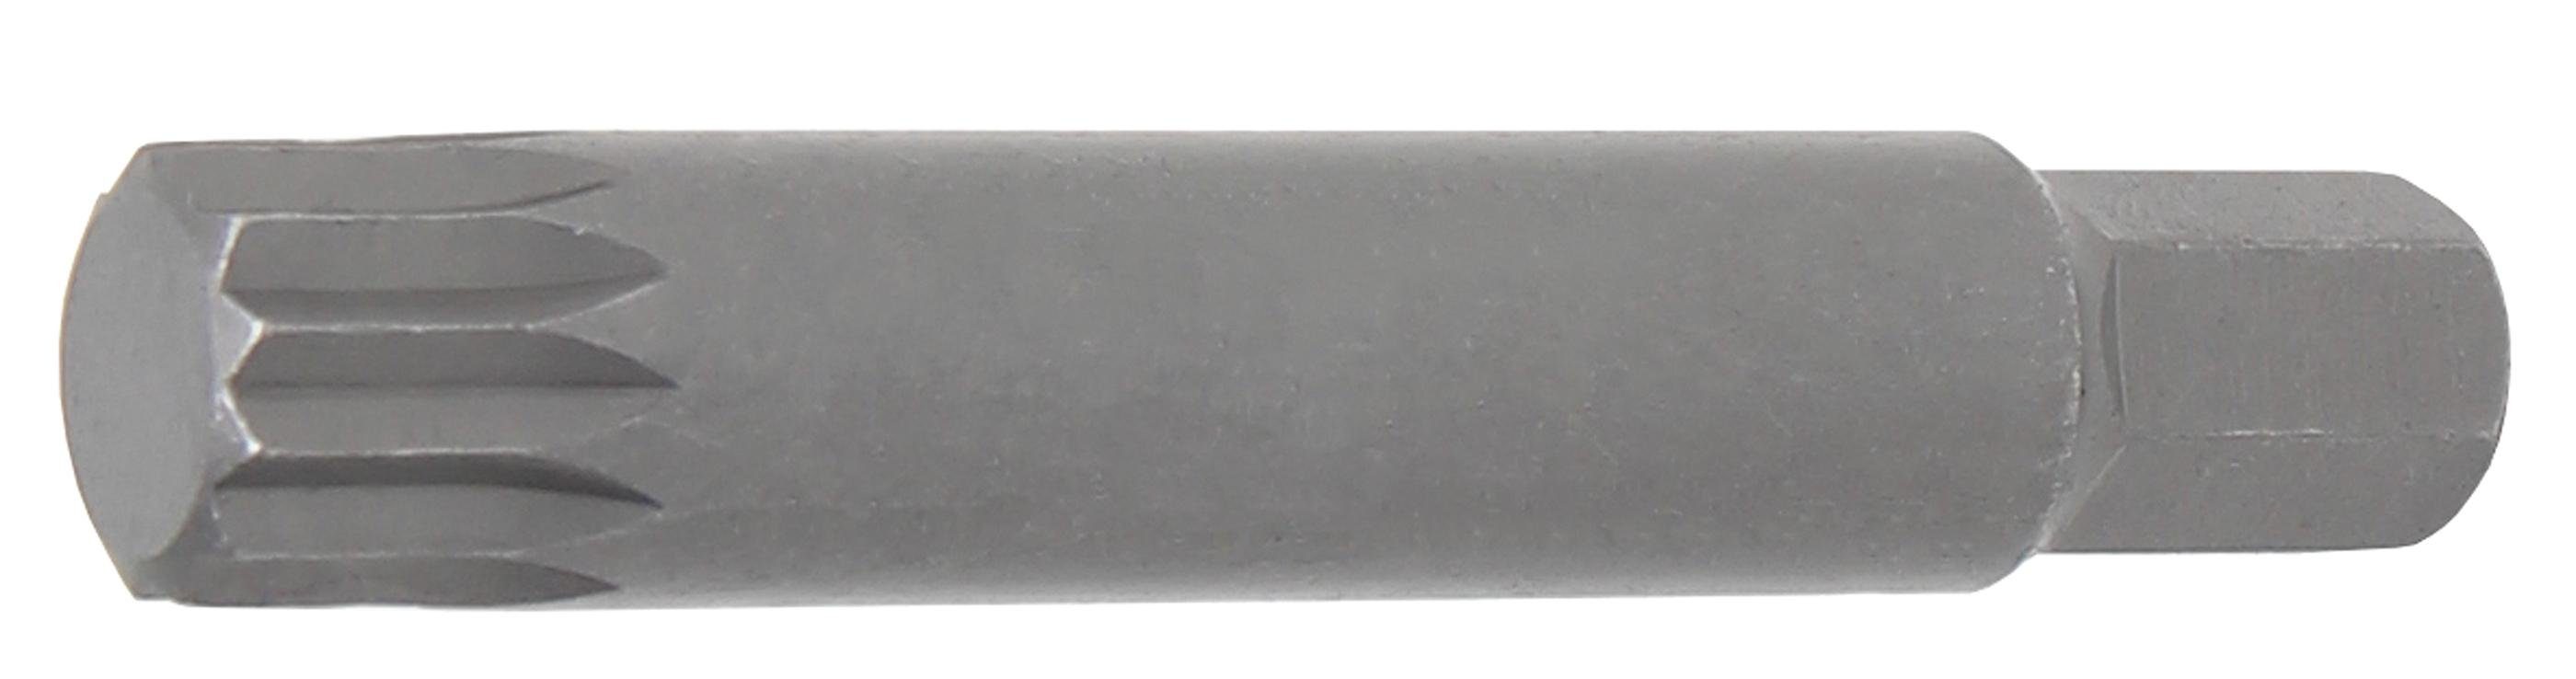 BGS technic Bit-Schraubendreher Bit, Länge 75 mm, Antrieb Außensechskant 10 mm (3/8), Innenvielzahn (für XZN) M14